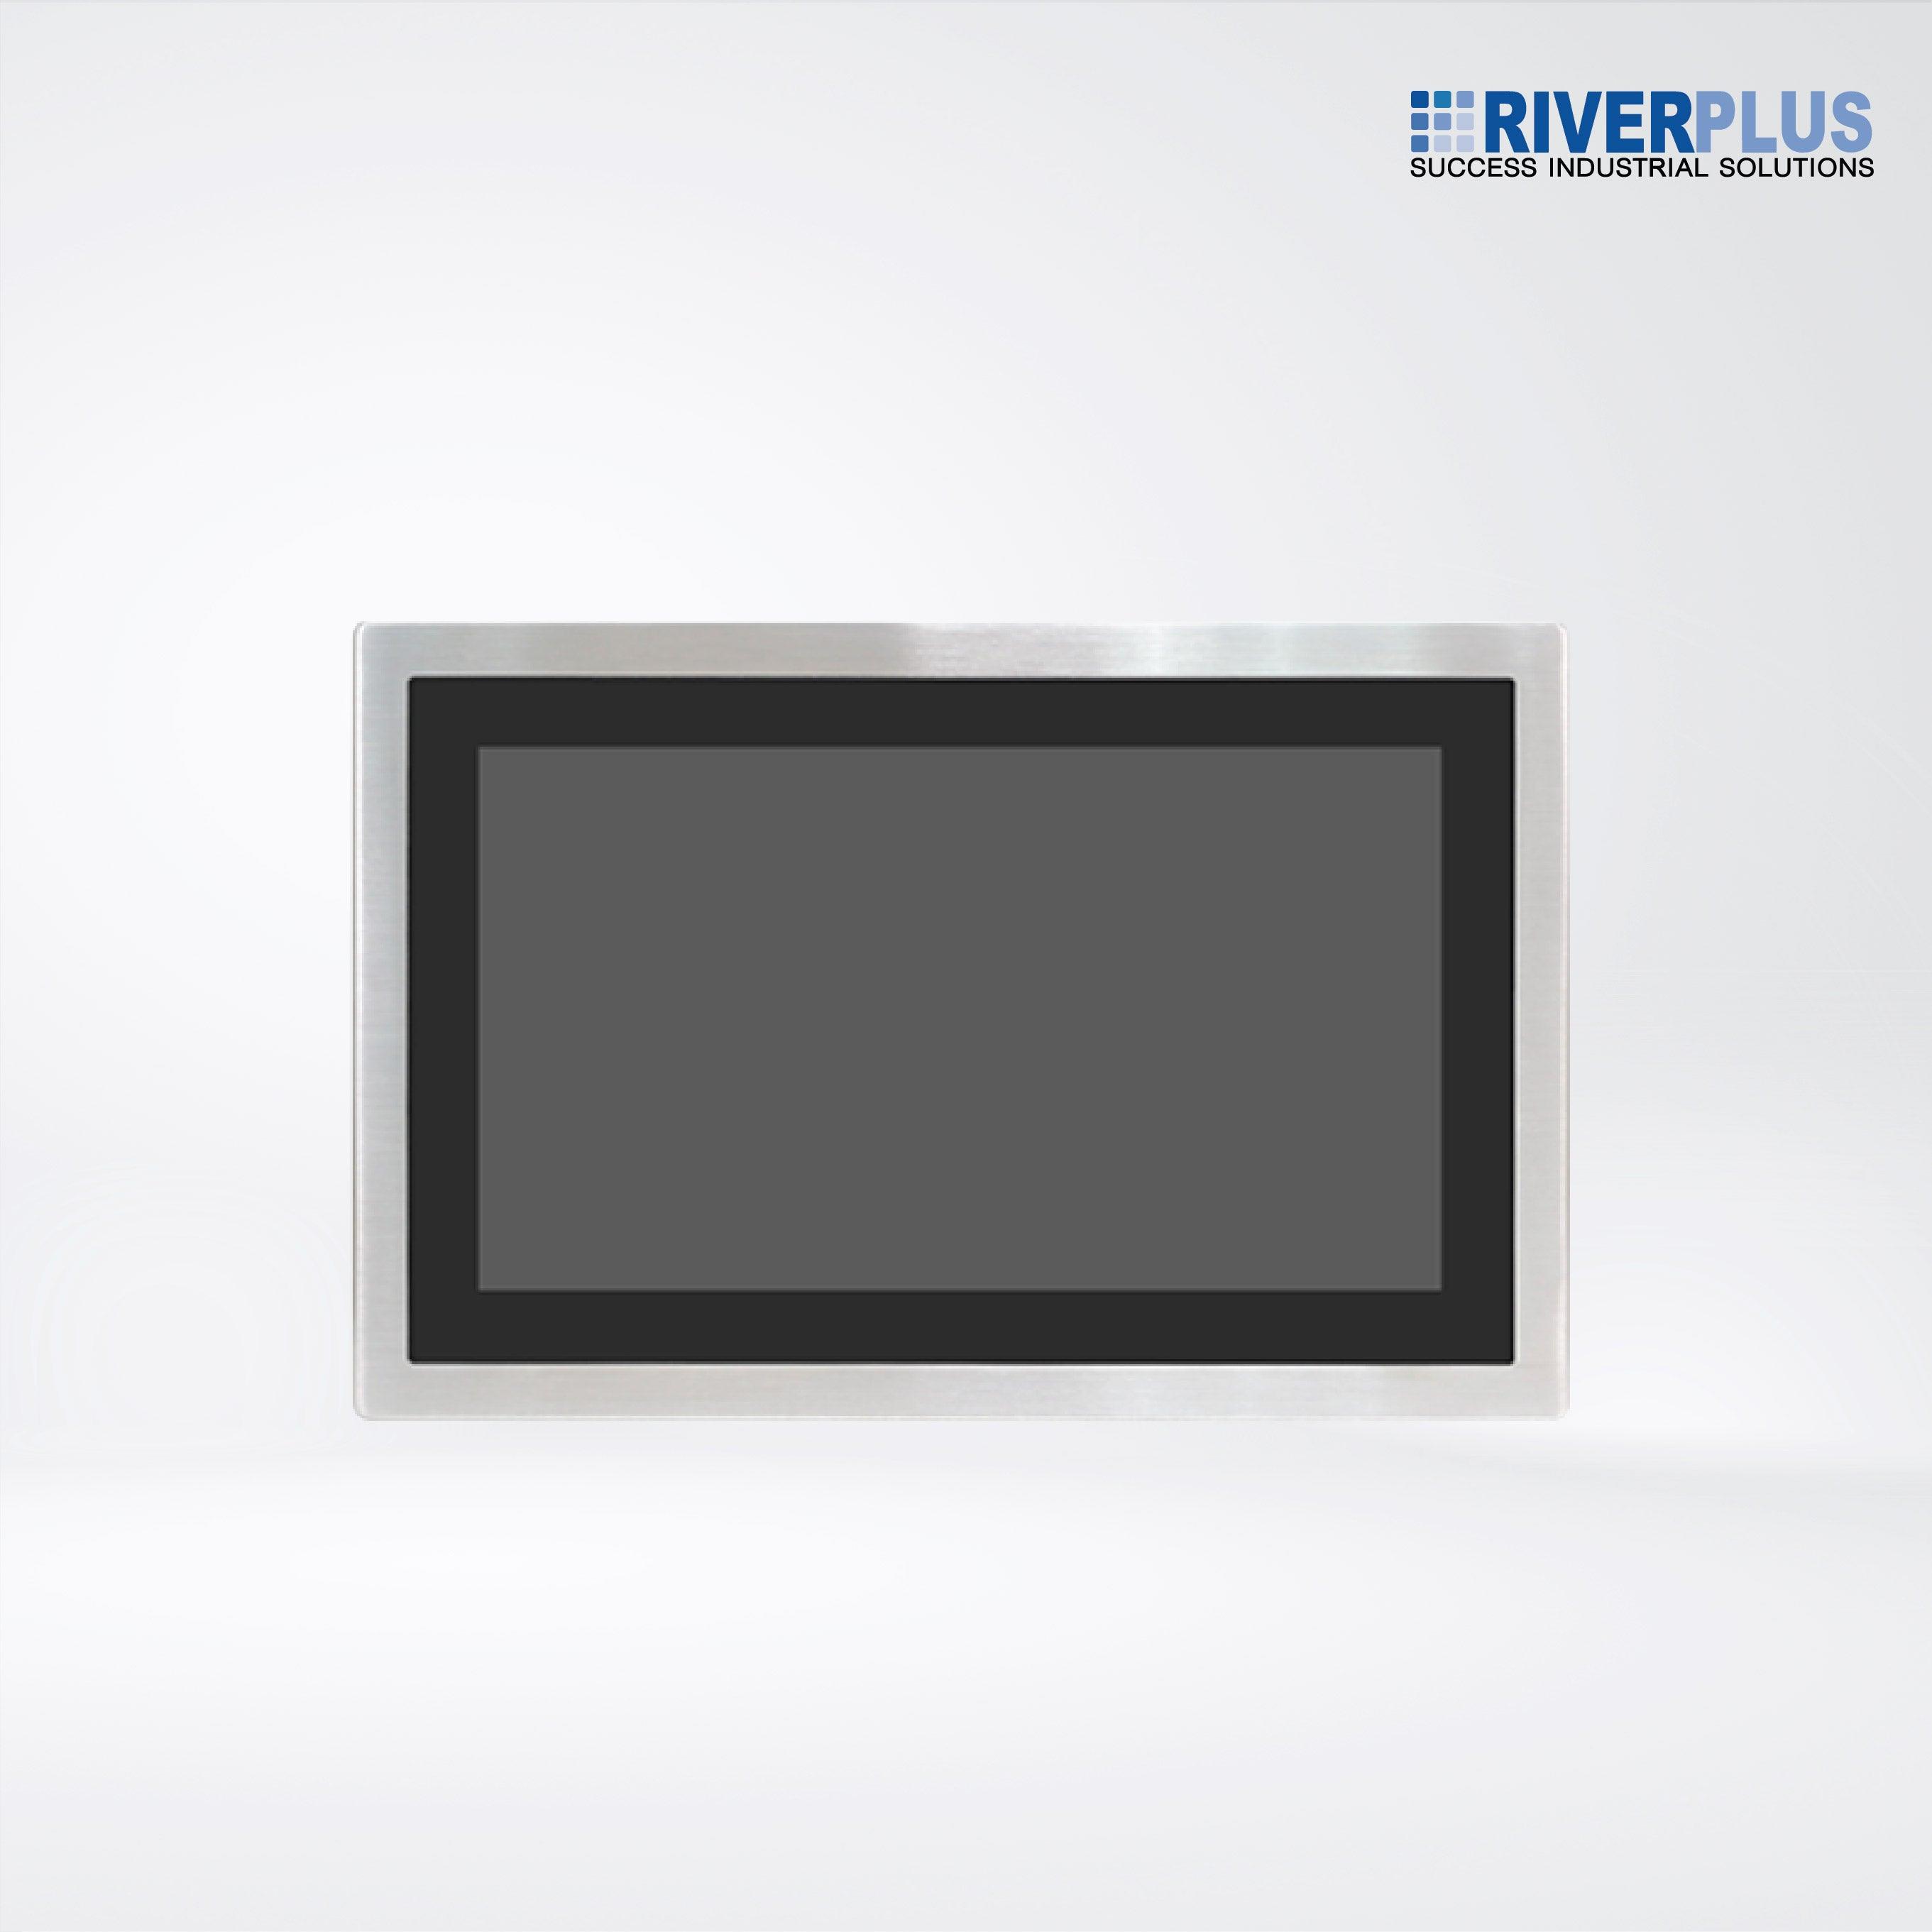 AEx-916AP 15.6” Intel Skylake IP66 Stainless Steel Panel PC - Riverplus